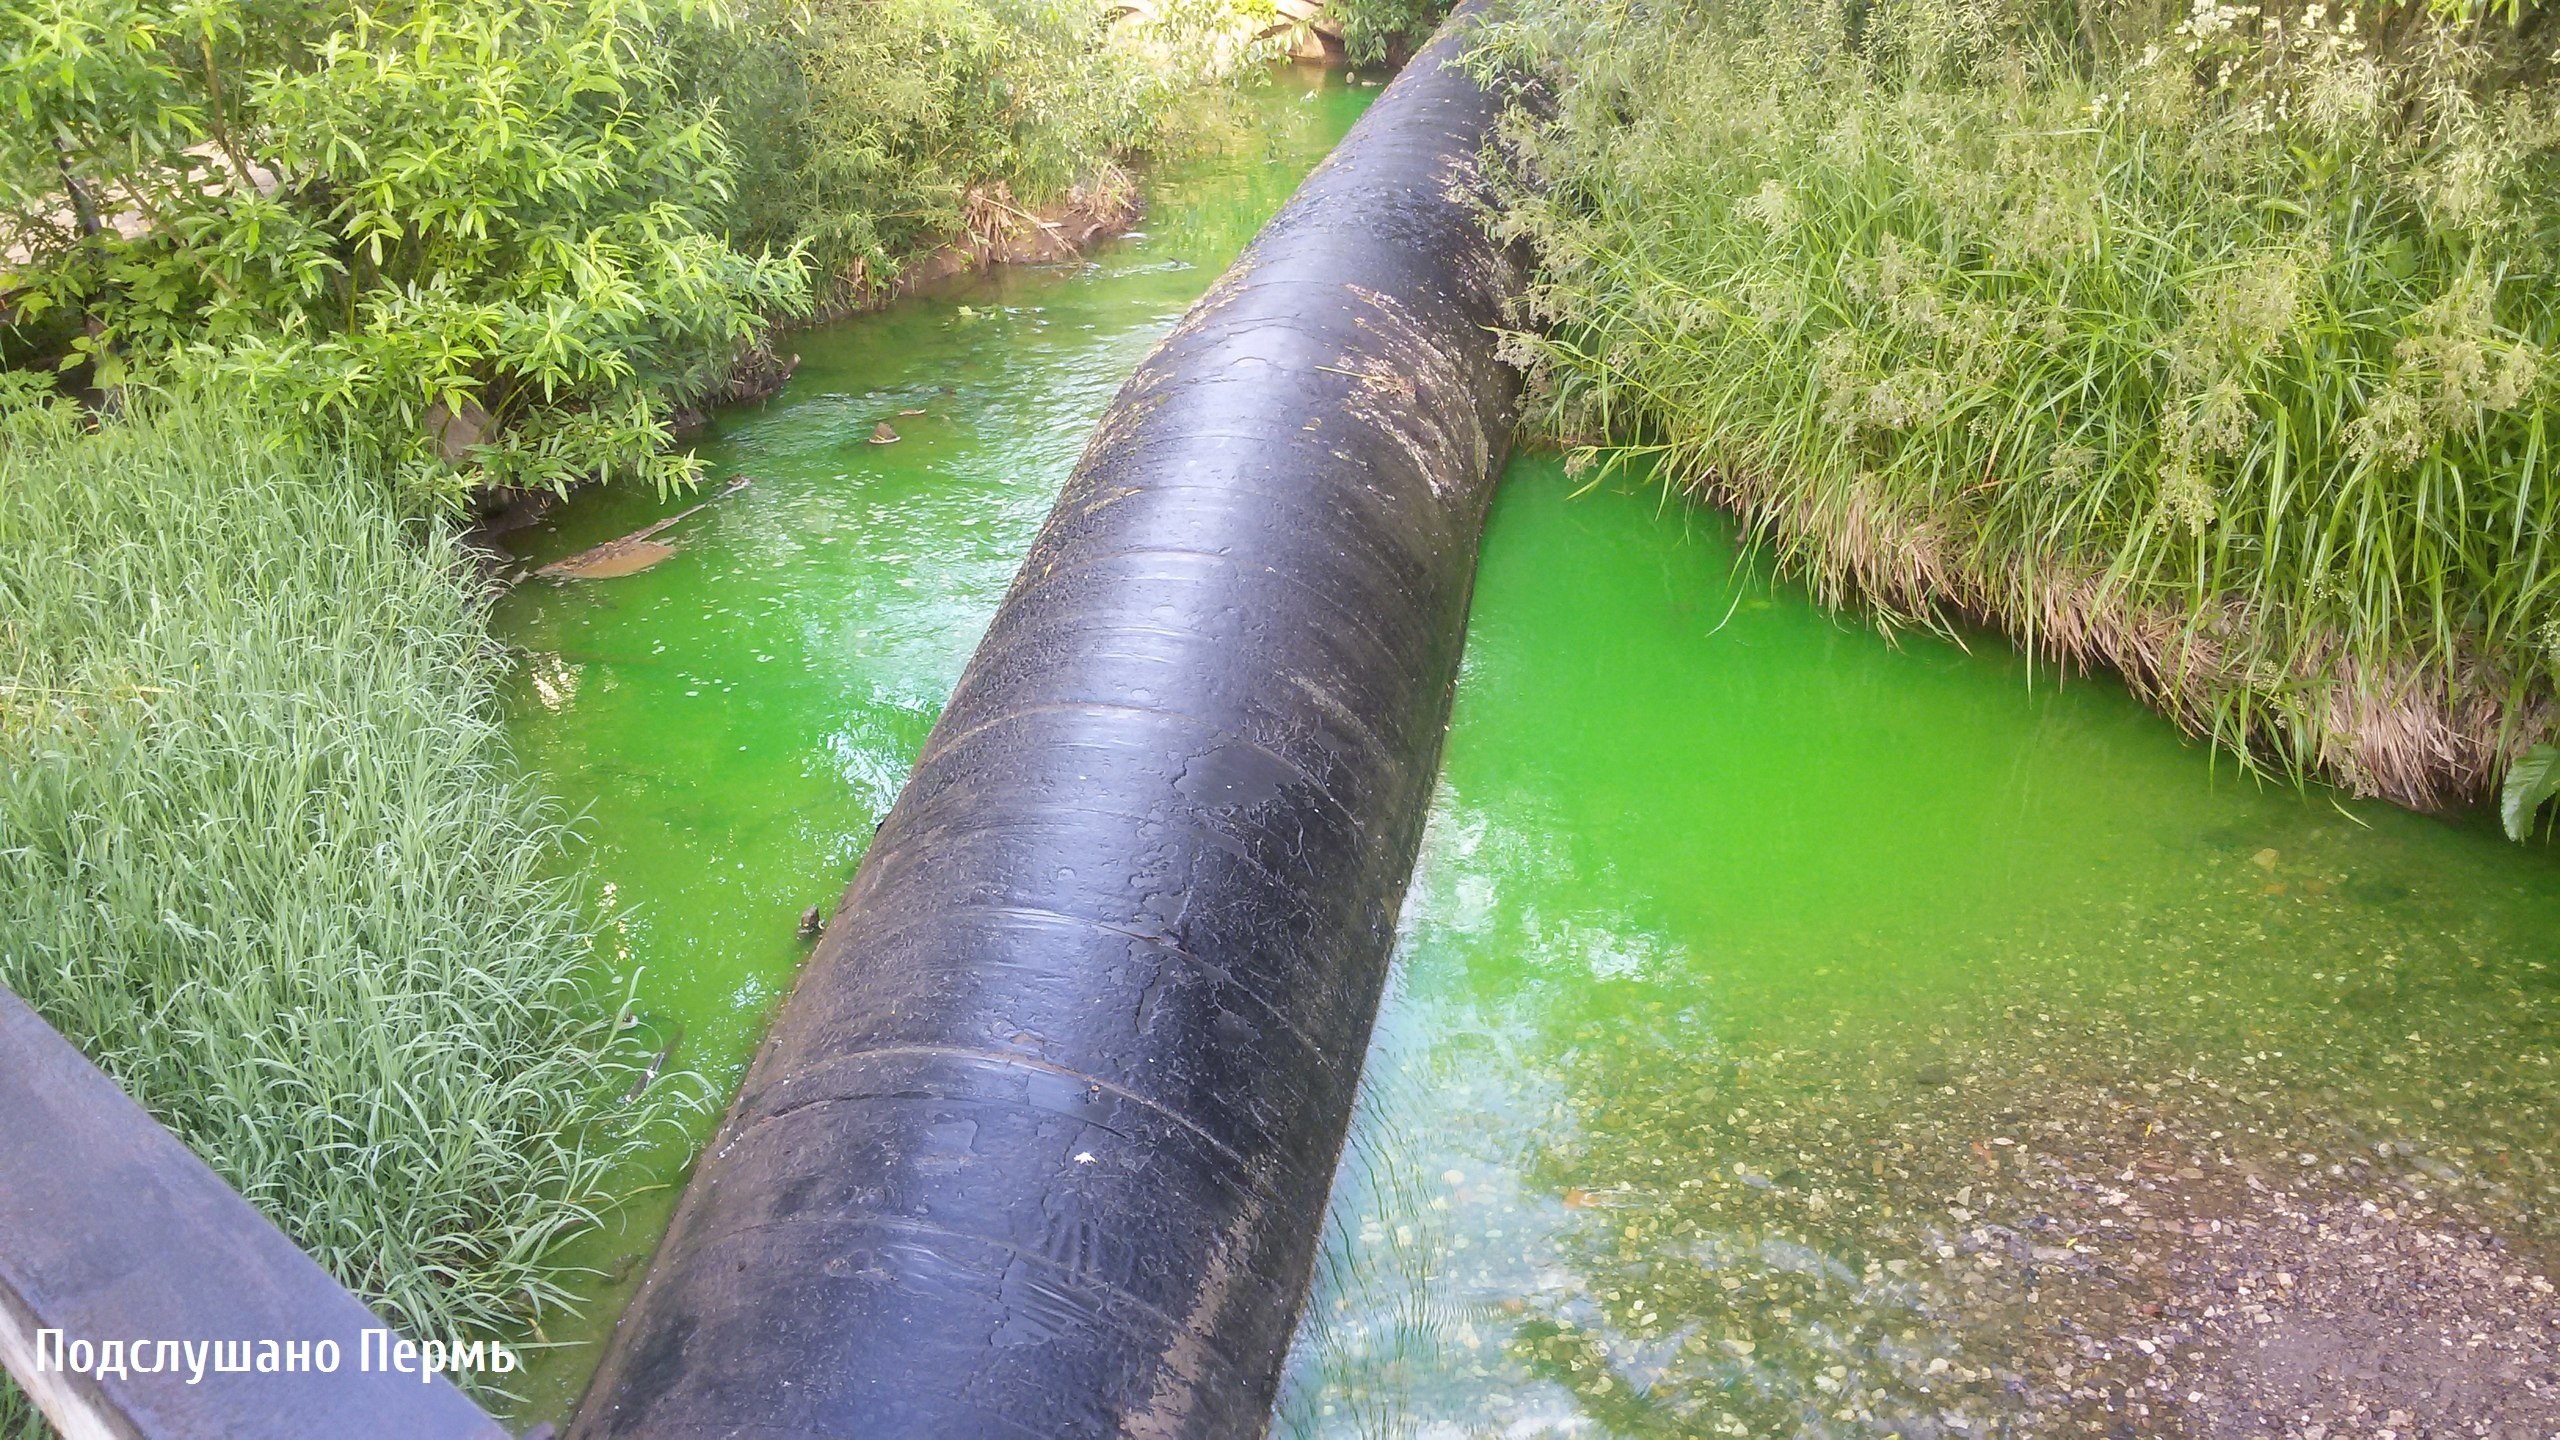 Пермяки пожаловались на зеленый цвет воды в реке Ива